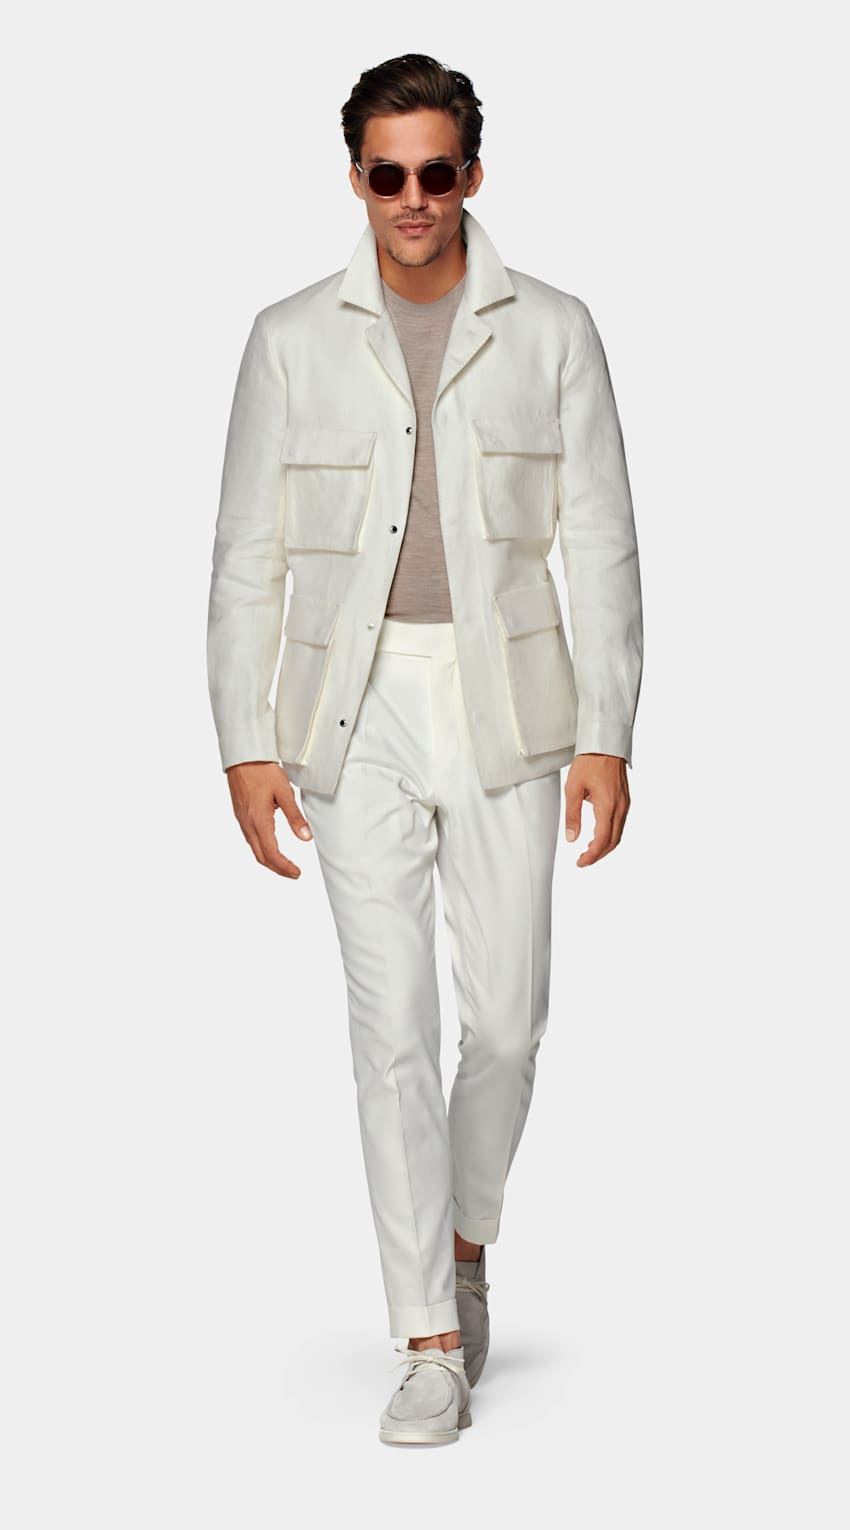 SUITSUPPLY Pures Leinen von Beste, Italien Field Jacket off-white